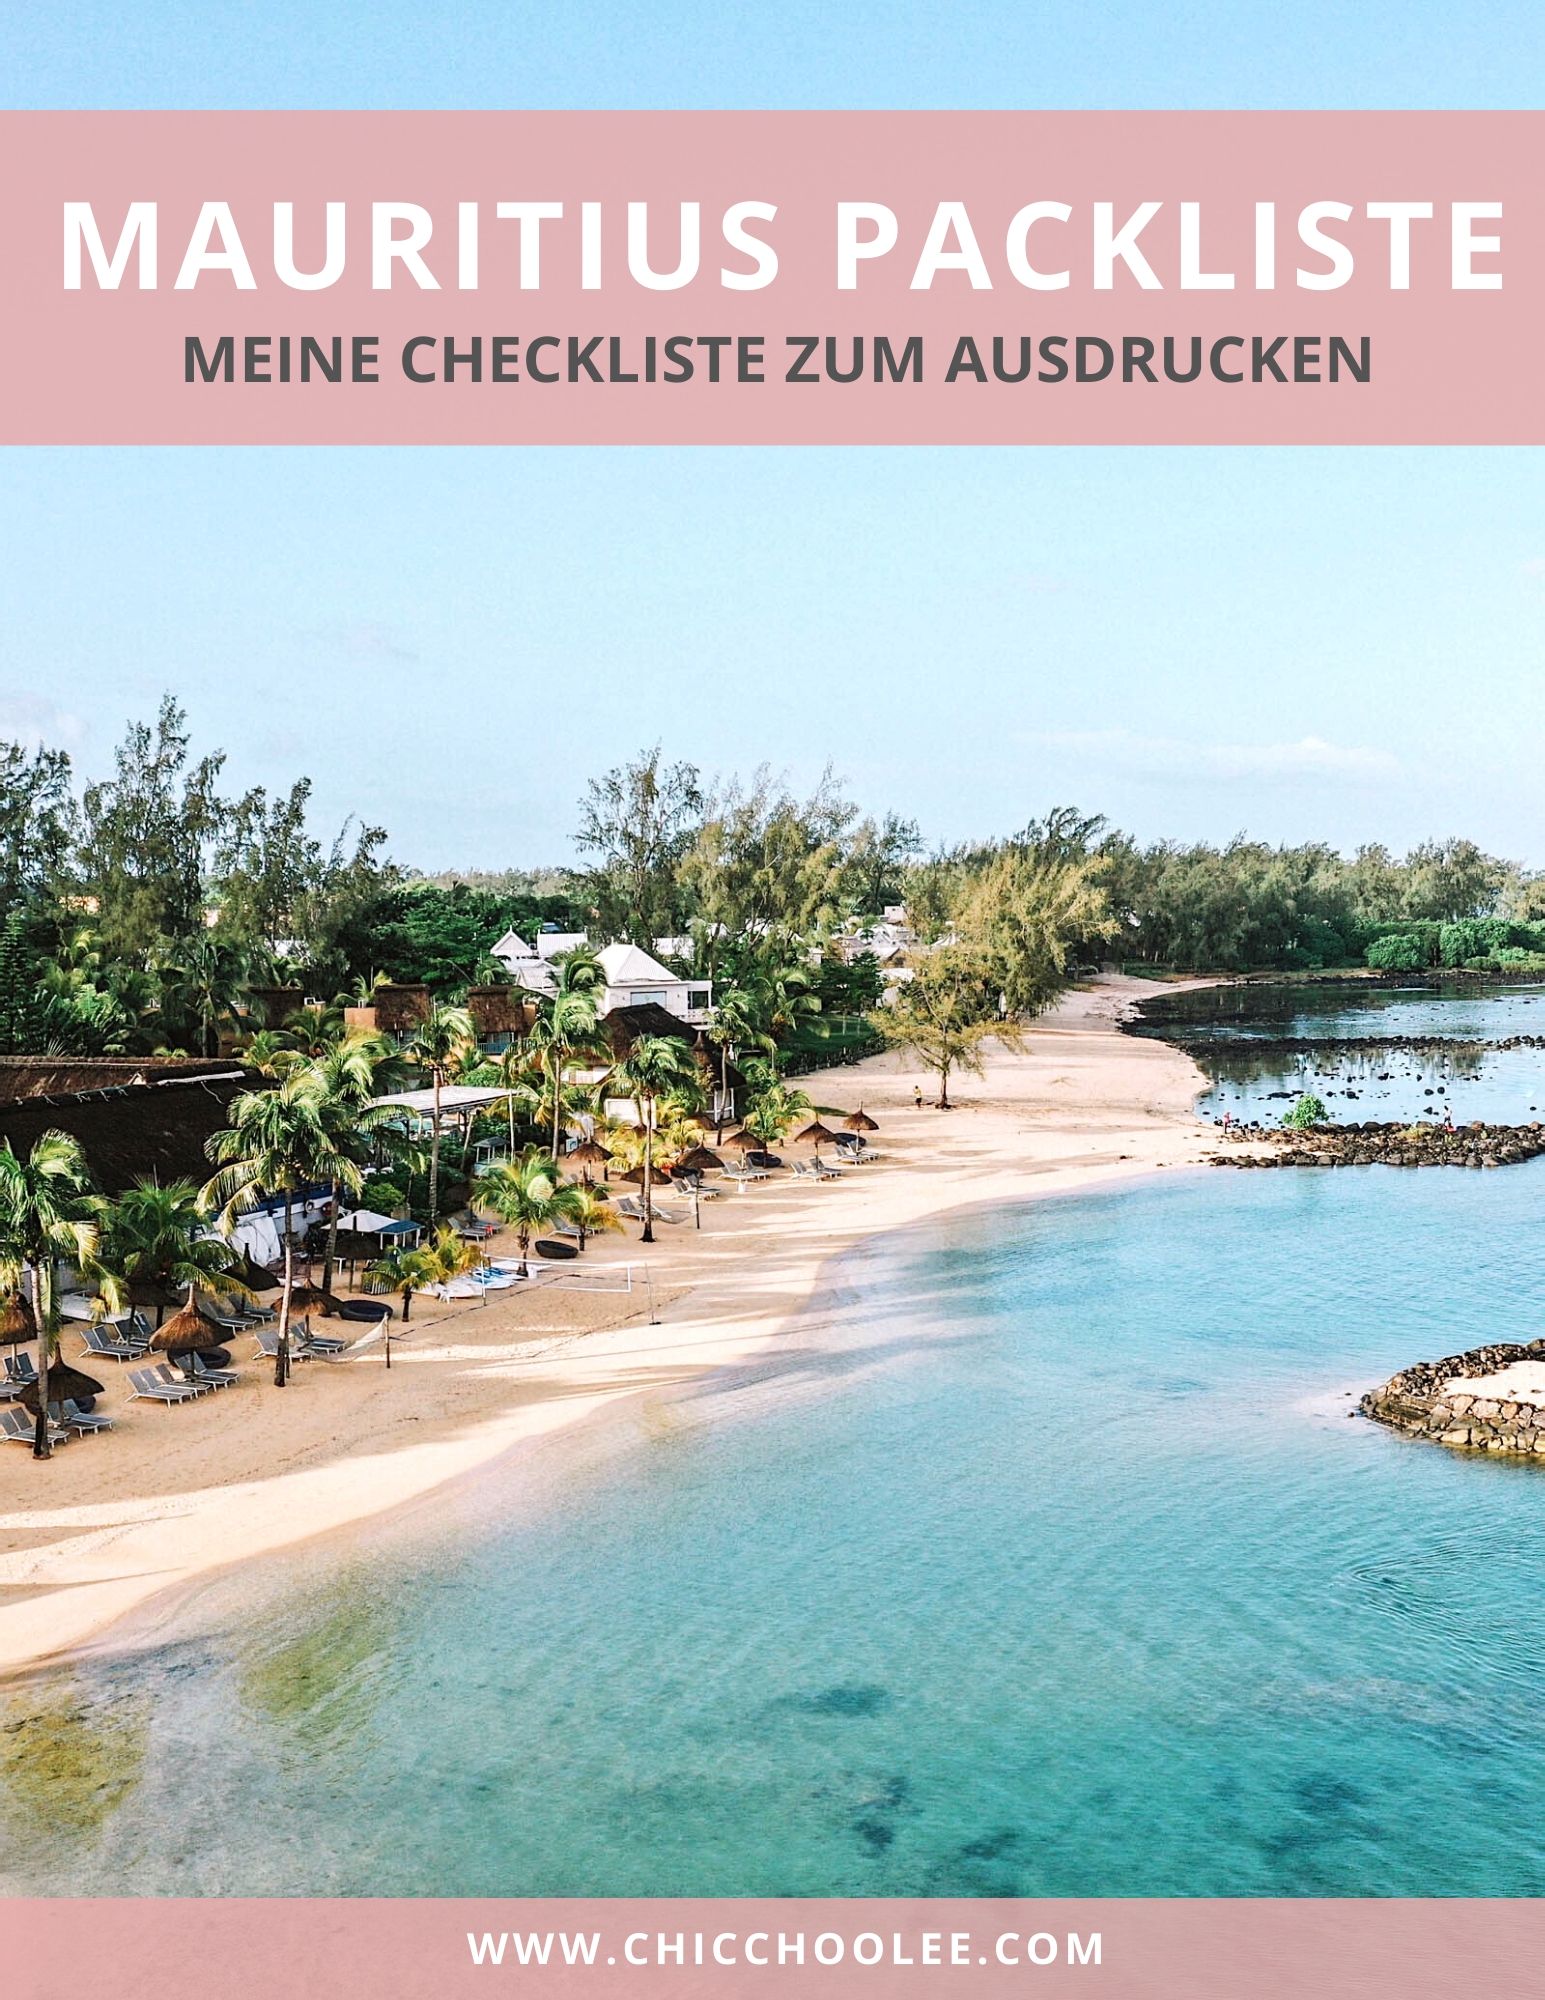 Mauritius Packliste Urlaub Reise